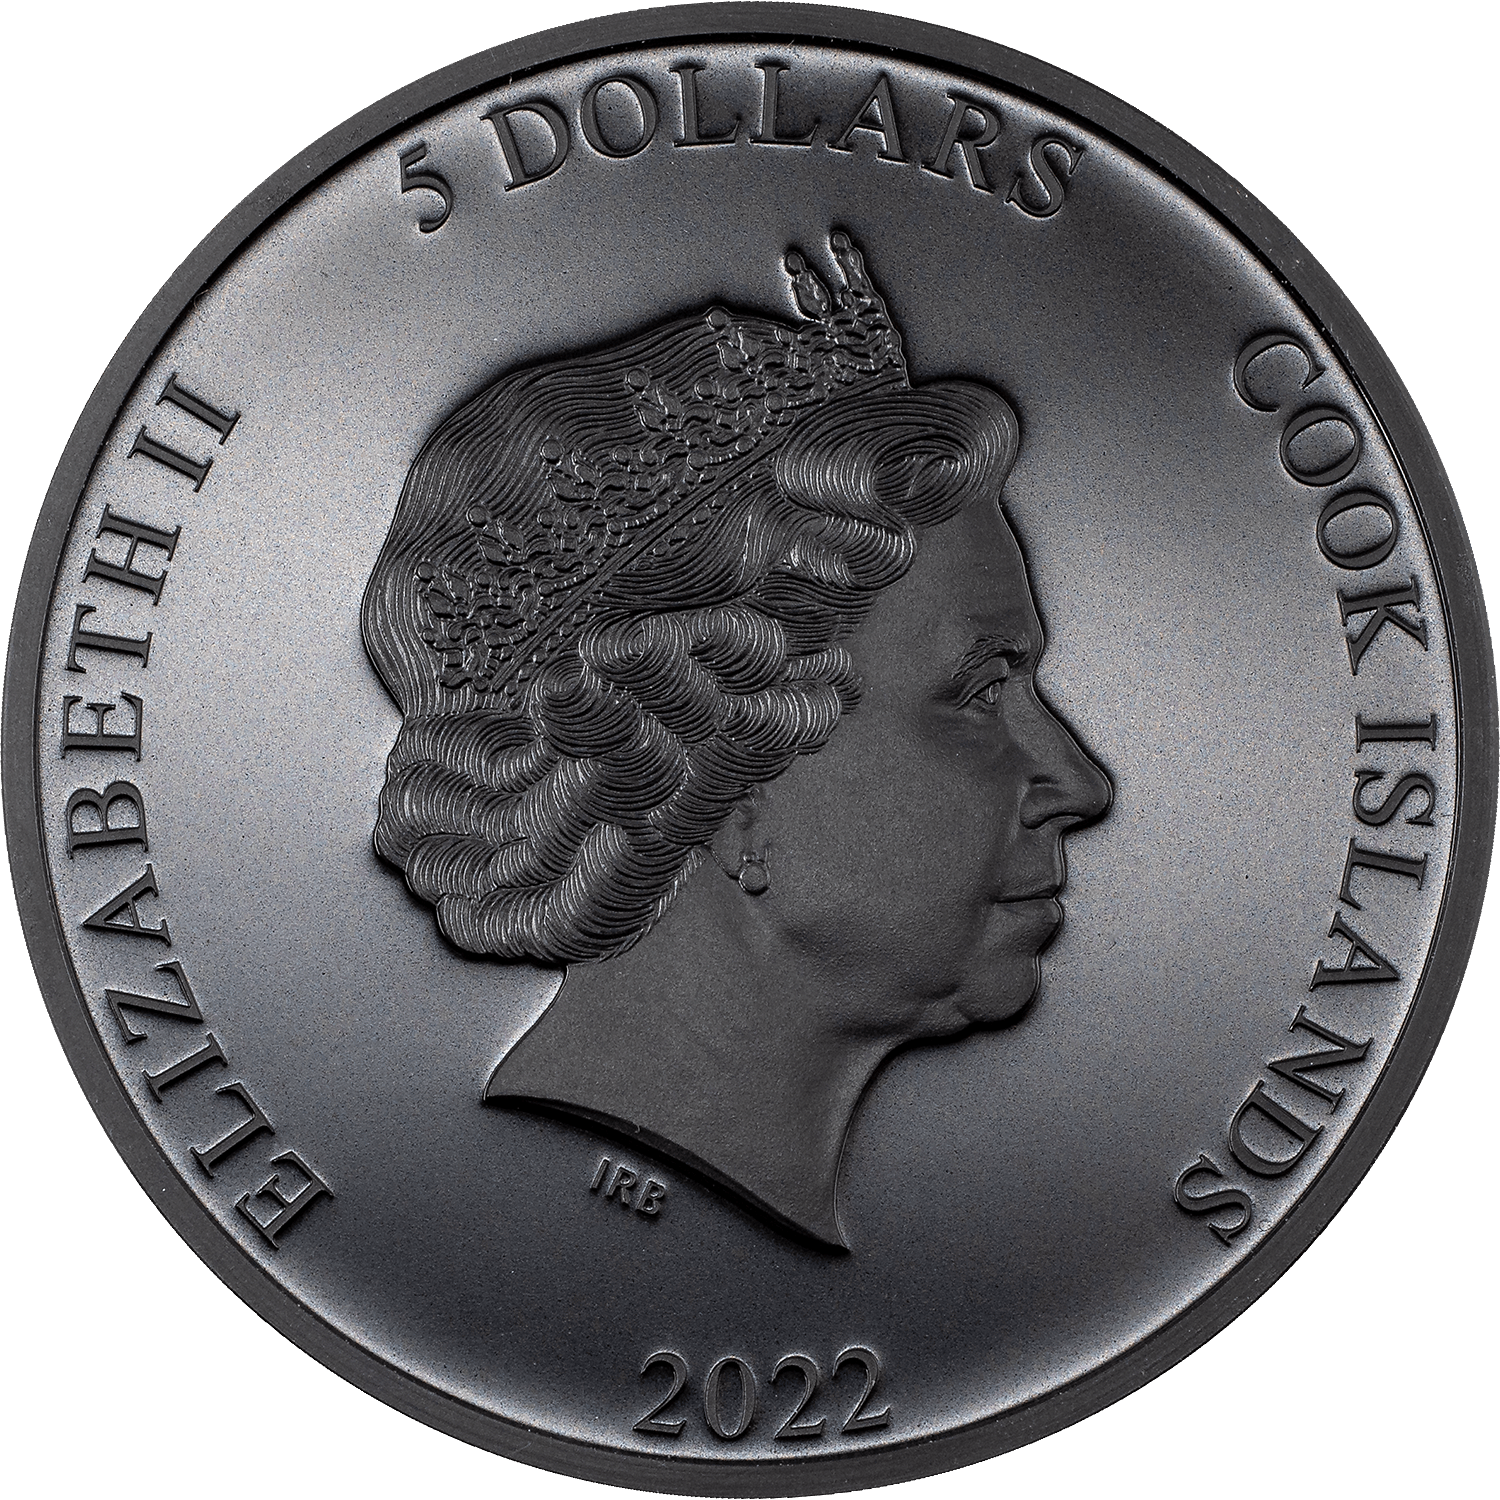 FEAR OF THE DARK Iron Maiden 1 Oz Silver Coin $5 Cook Islands 2022 - PARTHAVA COIN